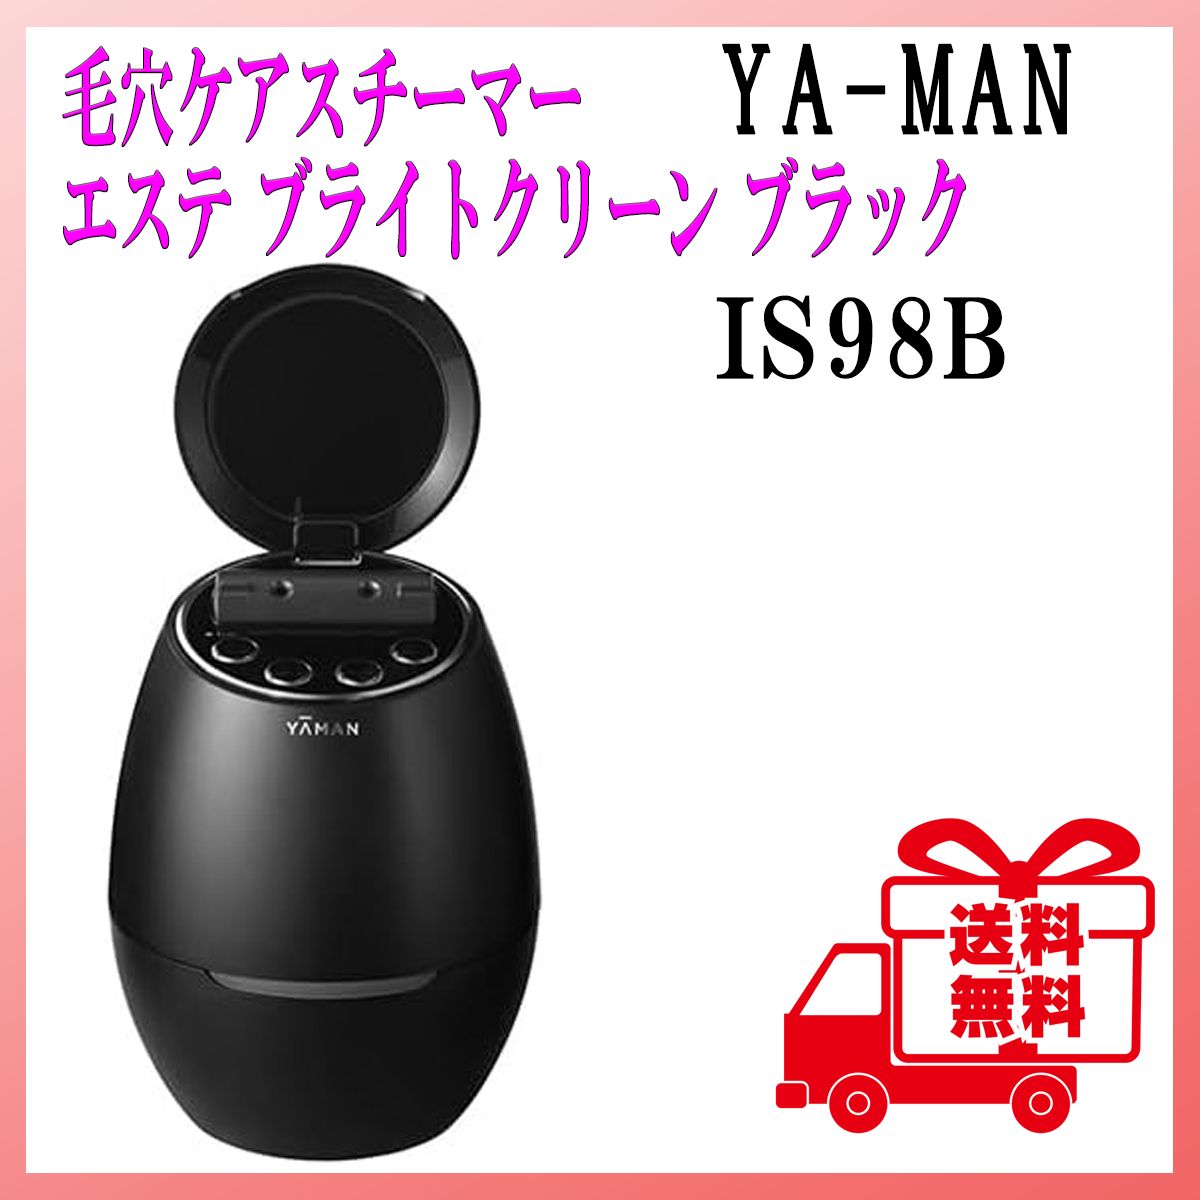 YA-MAN  毛穴ケアスチーマー  ブライトクリーン  ブラック  IS98B